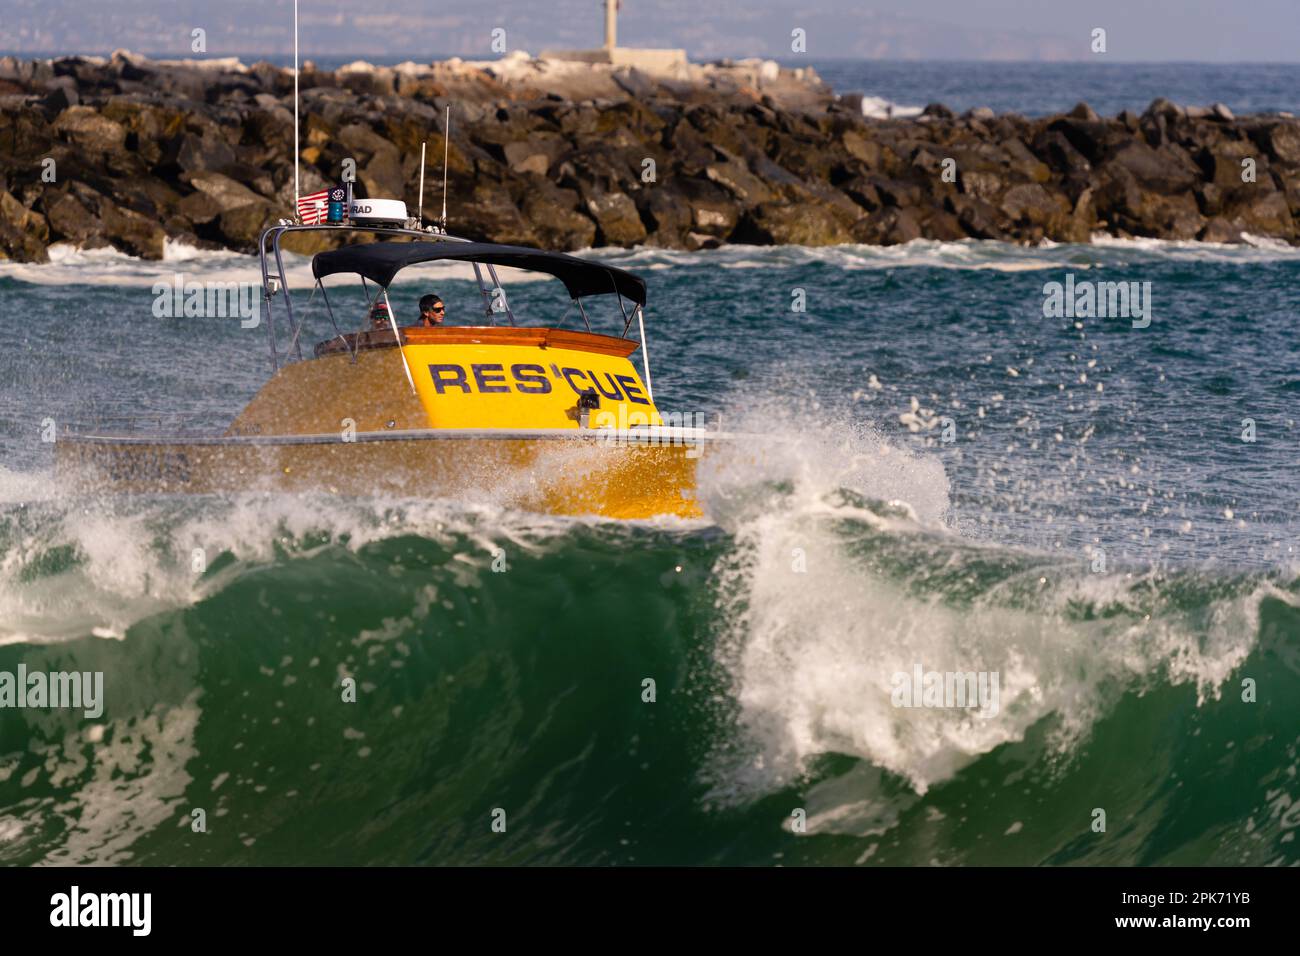 Bateau de sauvetage en mer, Newport Beach, Californie, États-Unis Banque D'Images